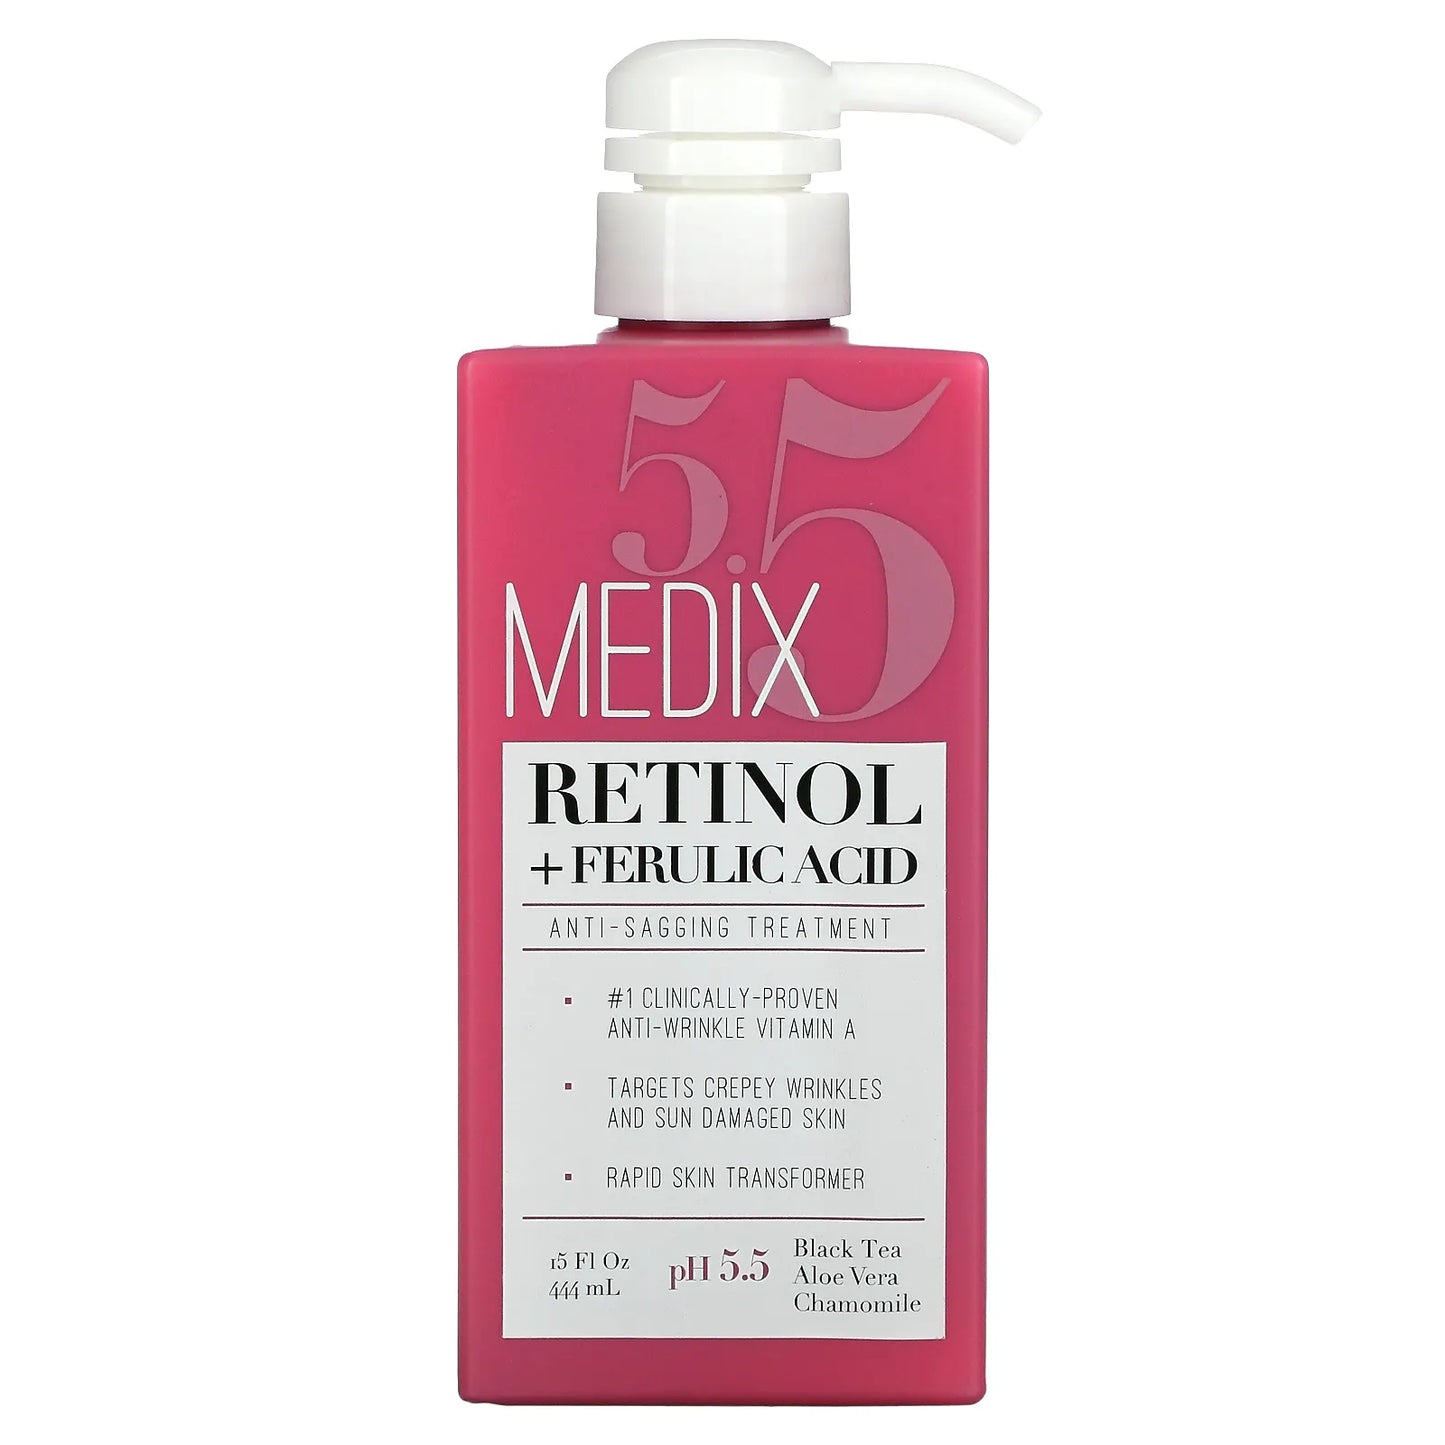 MEDIX RETINOL + FERULIC ACID